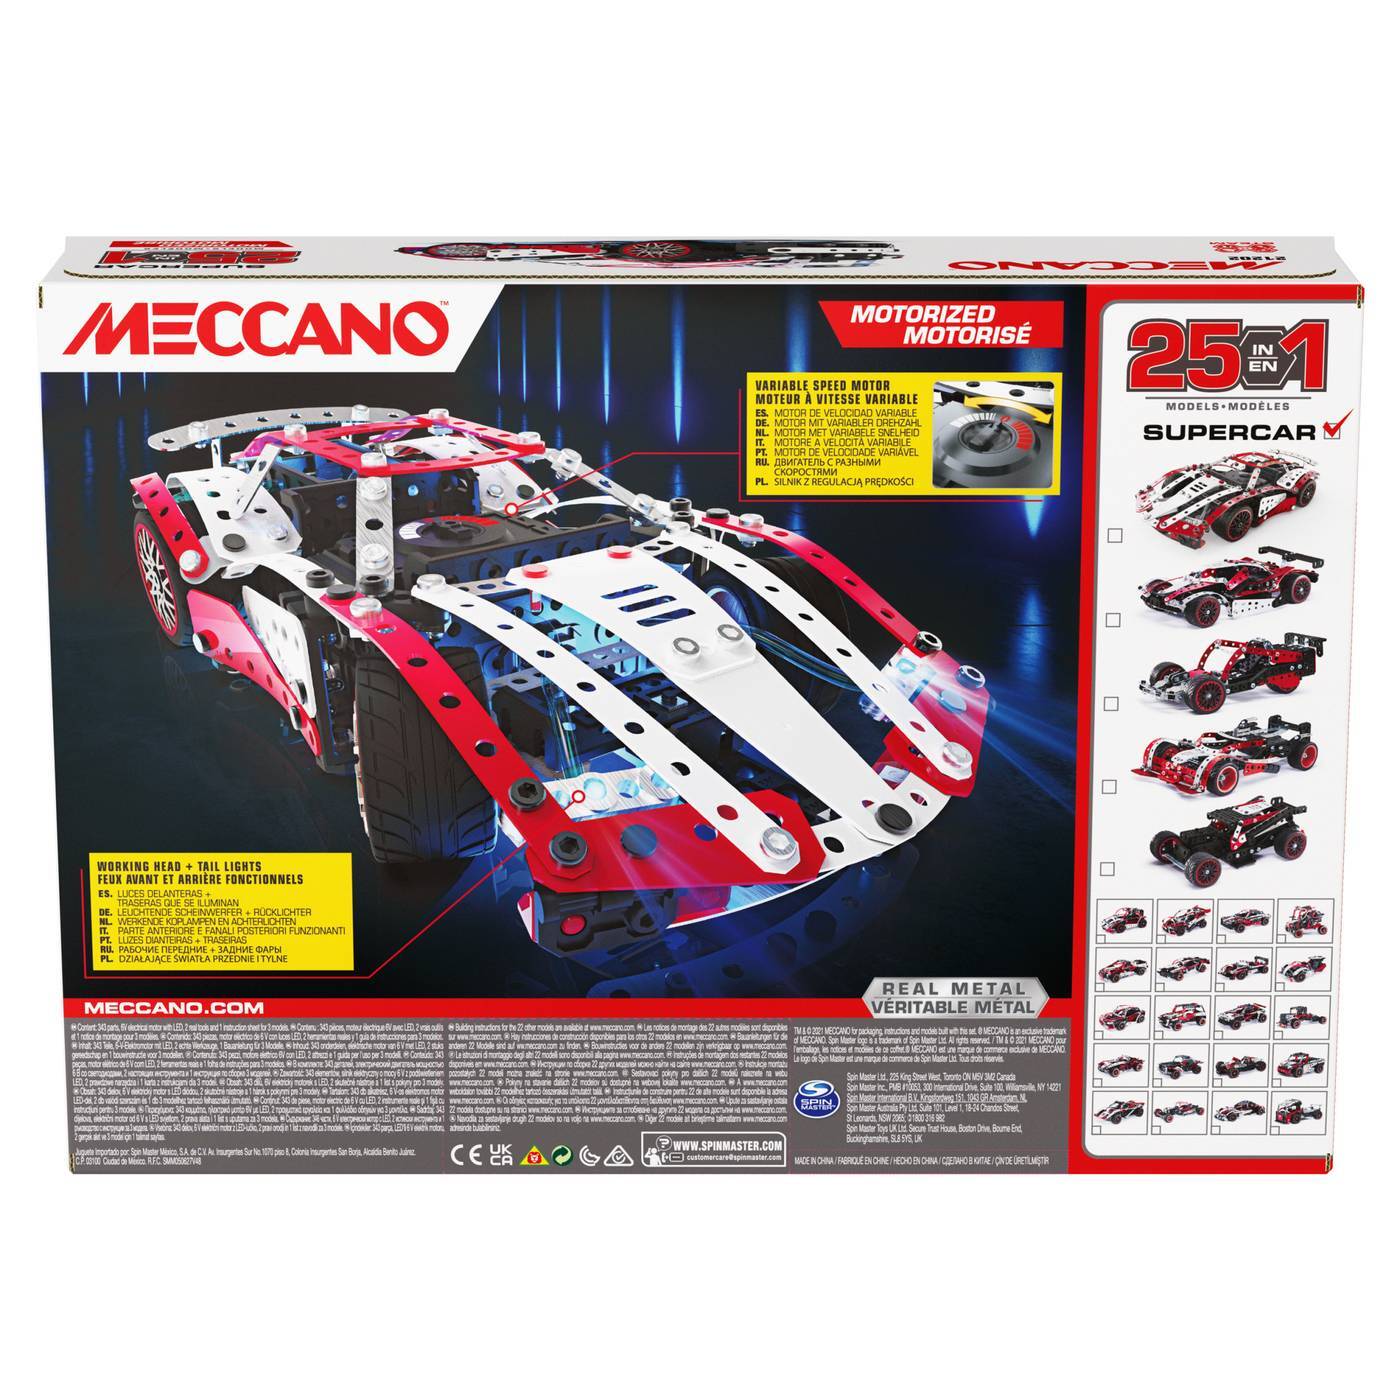 Meccano Motorized - Supercar 25 in 1